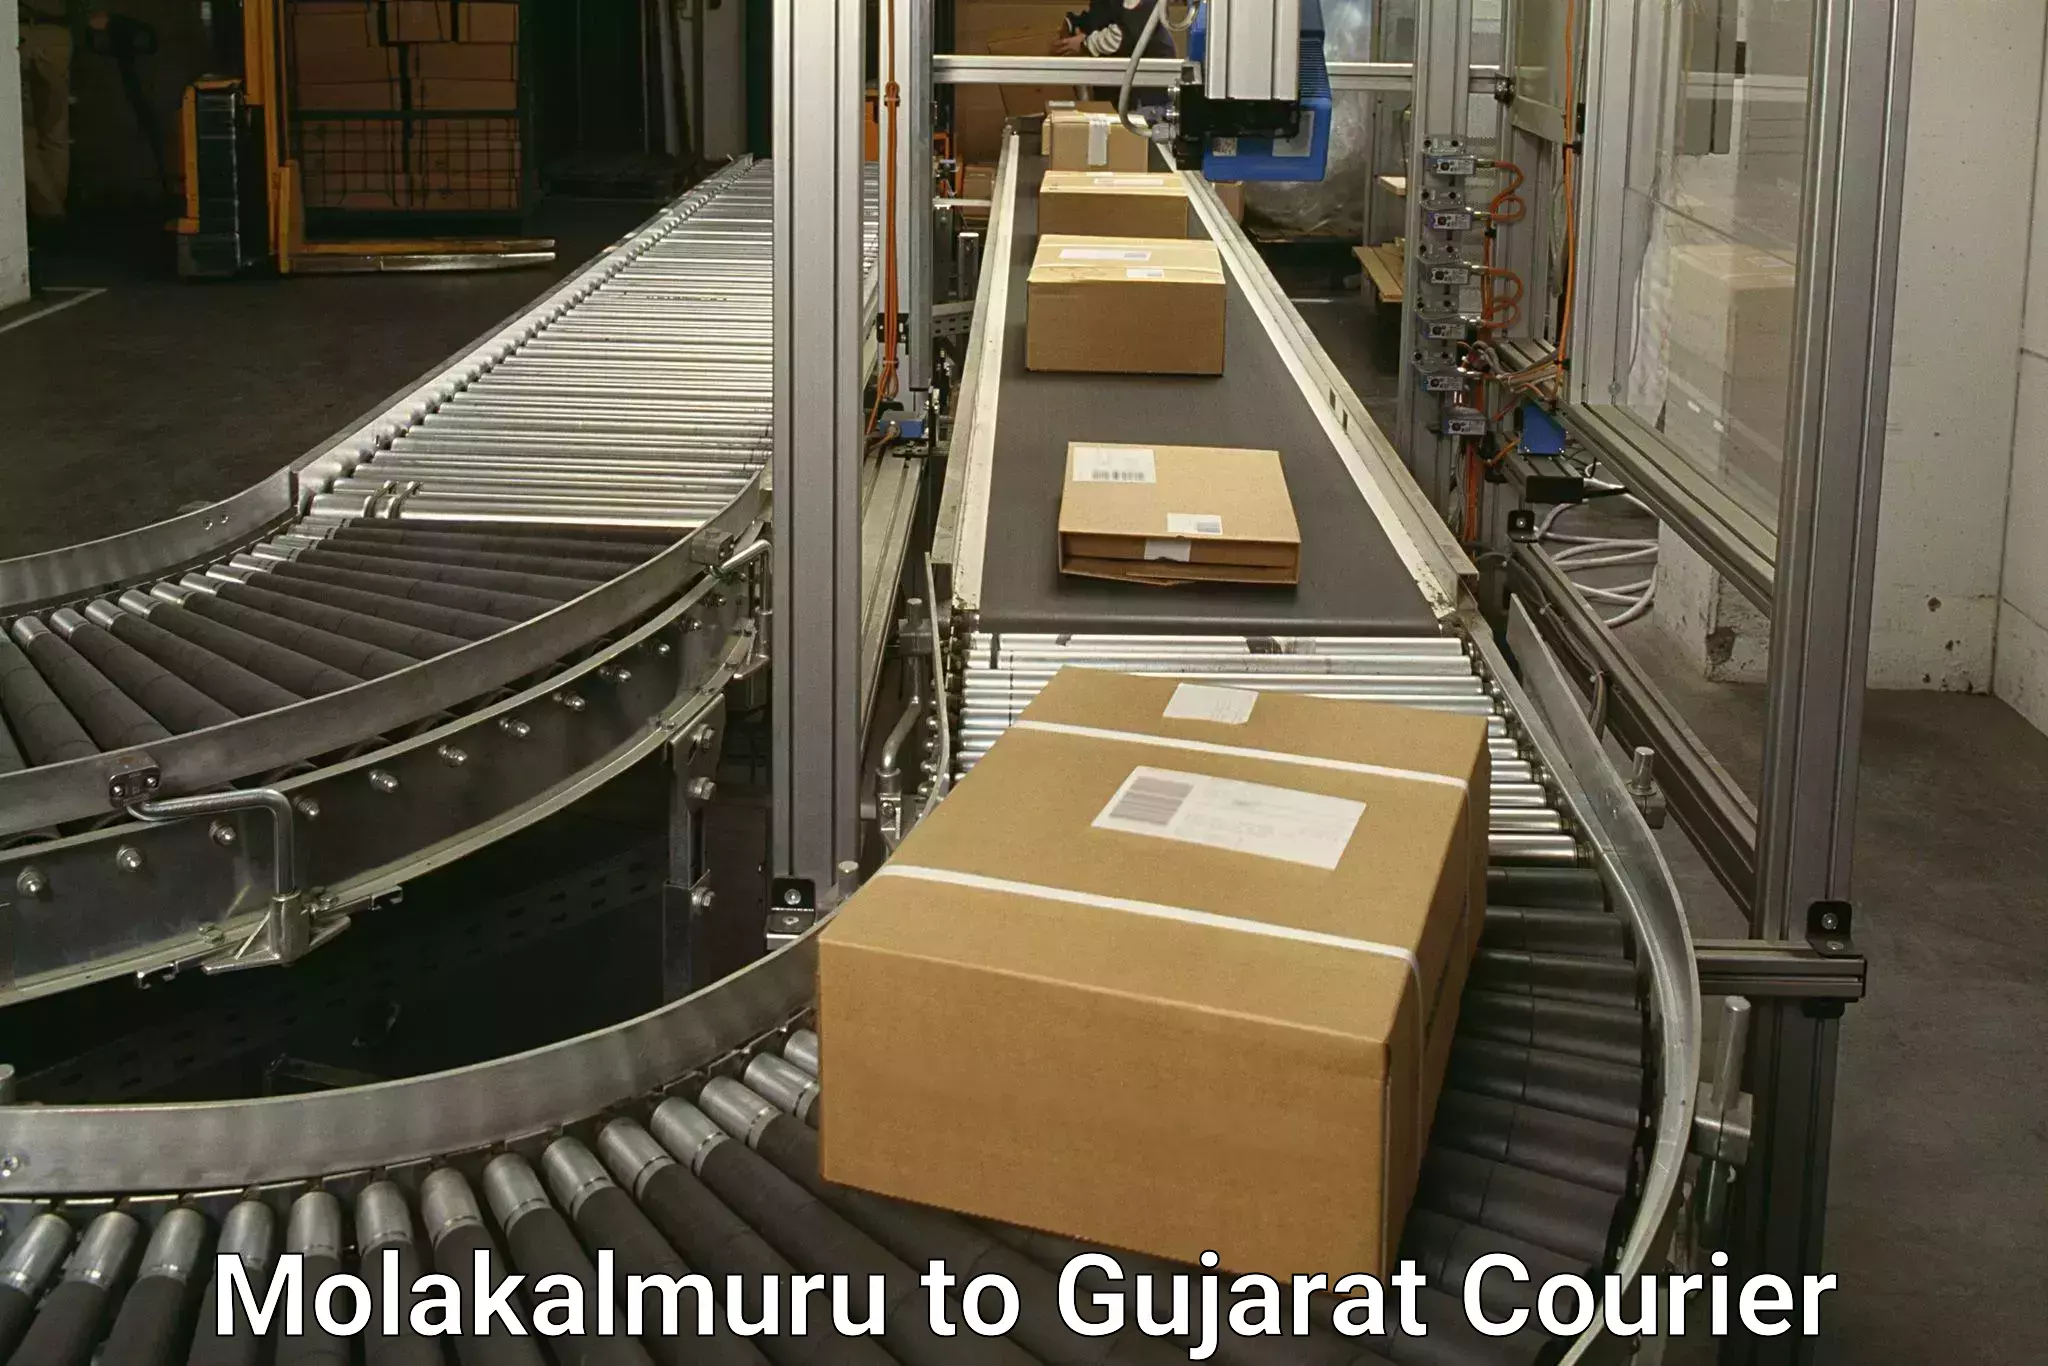 Efficient parcel transport Molakalmuru to Tarapur